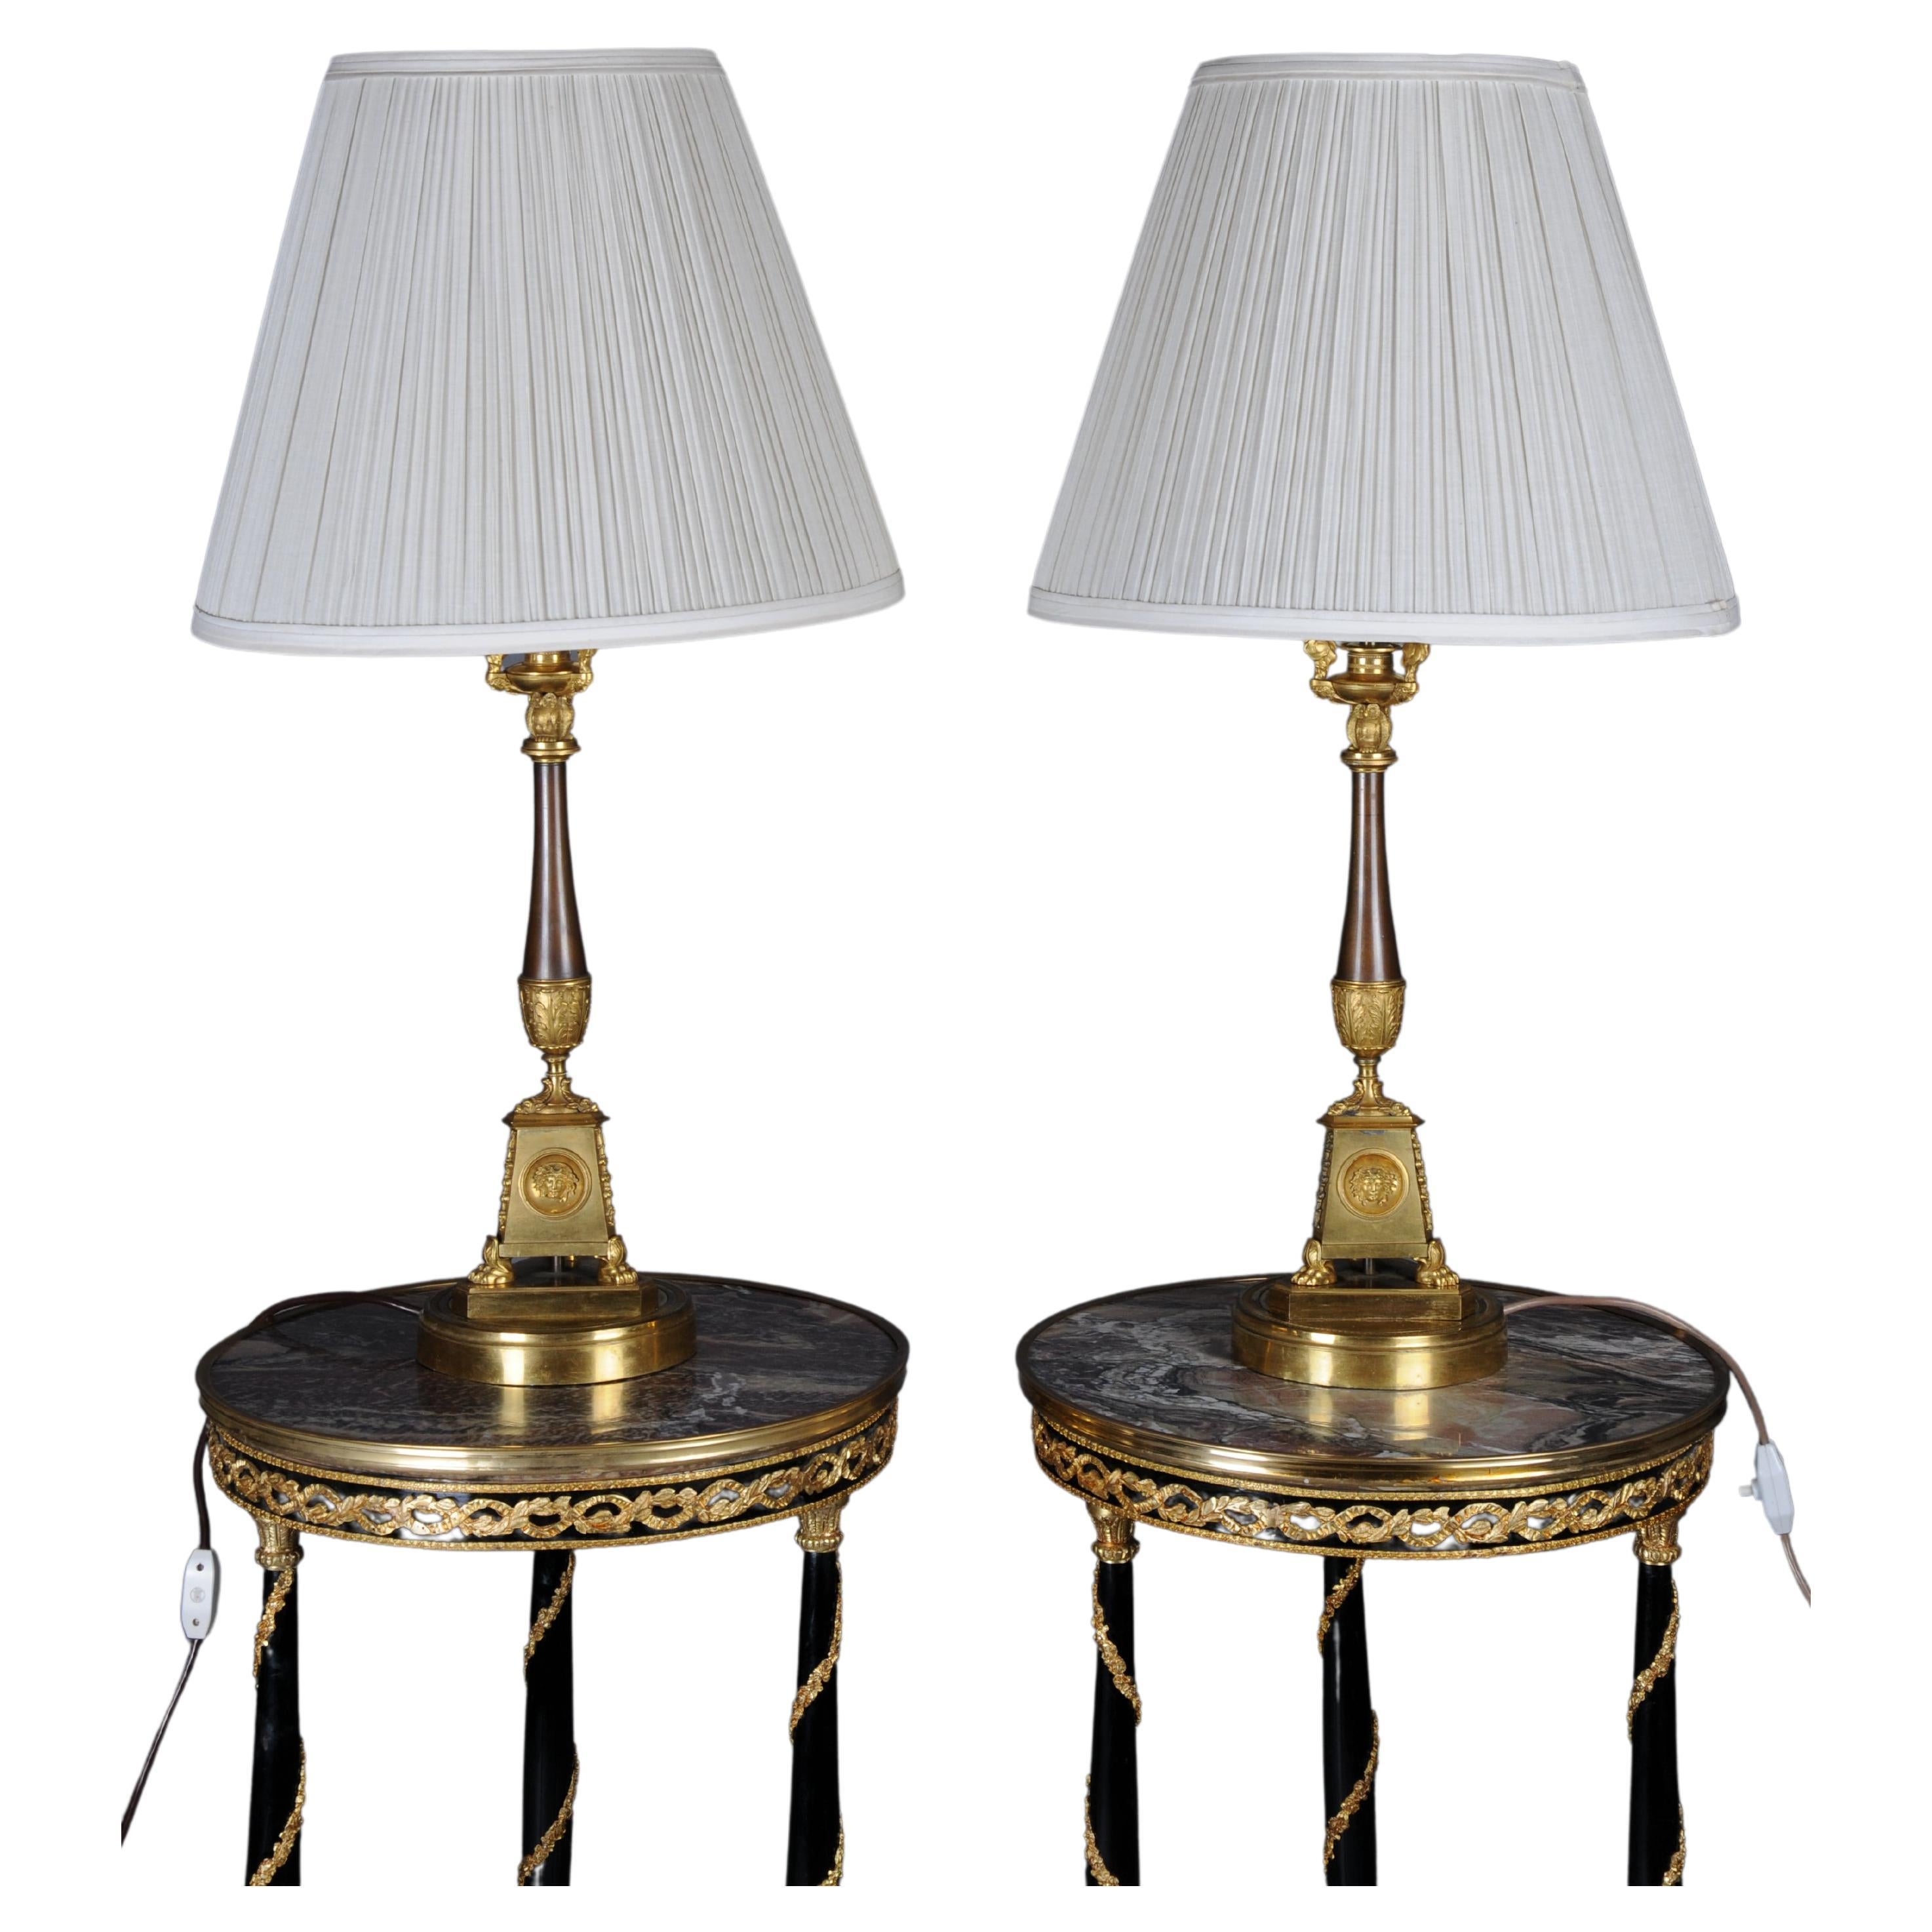 Paar (2) Empire-Bronze-Tischlampen aus der Zeit um 1805, Paris, Feuer vergoldet.